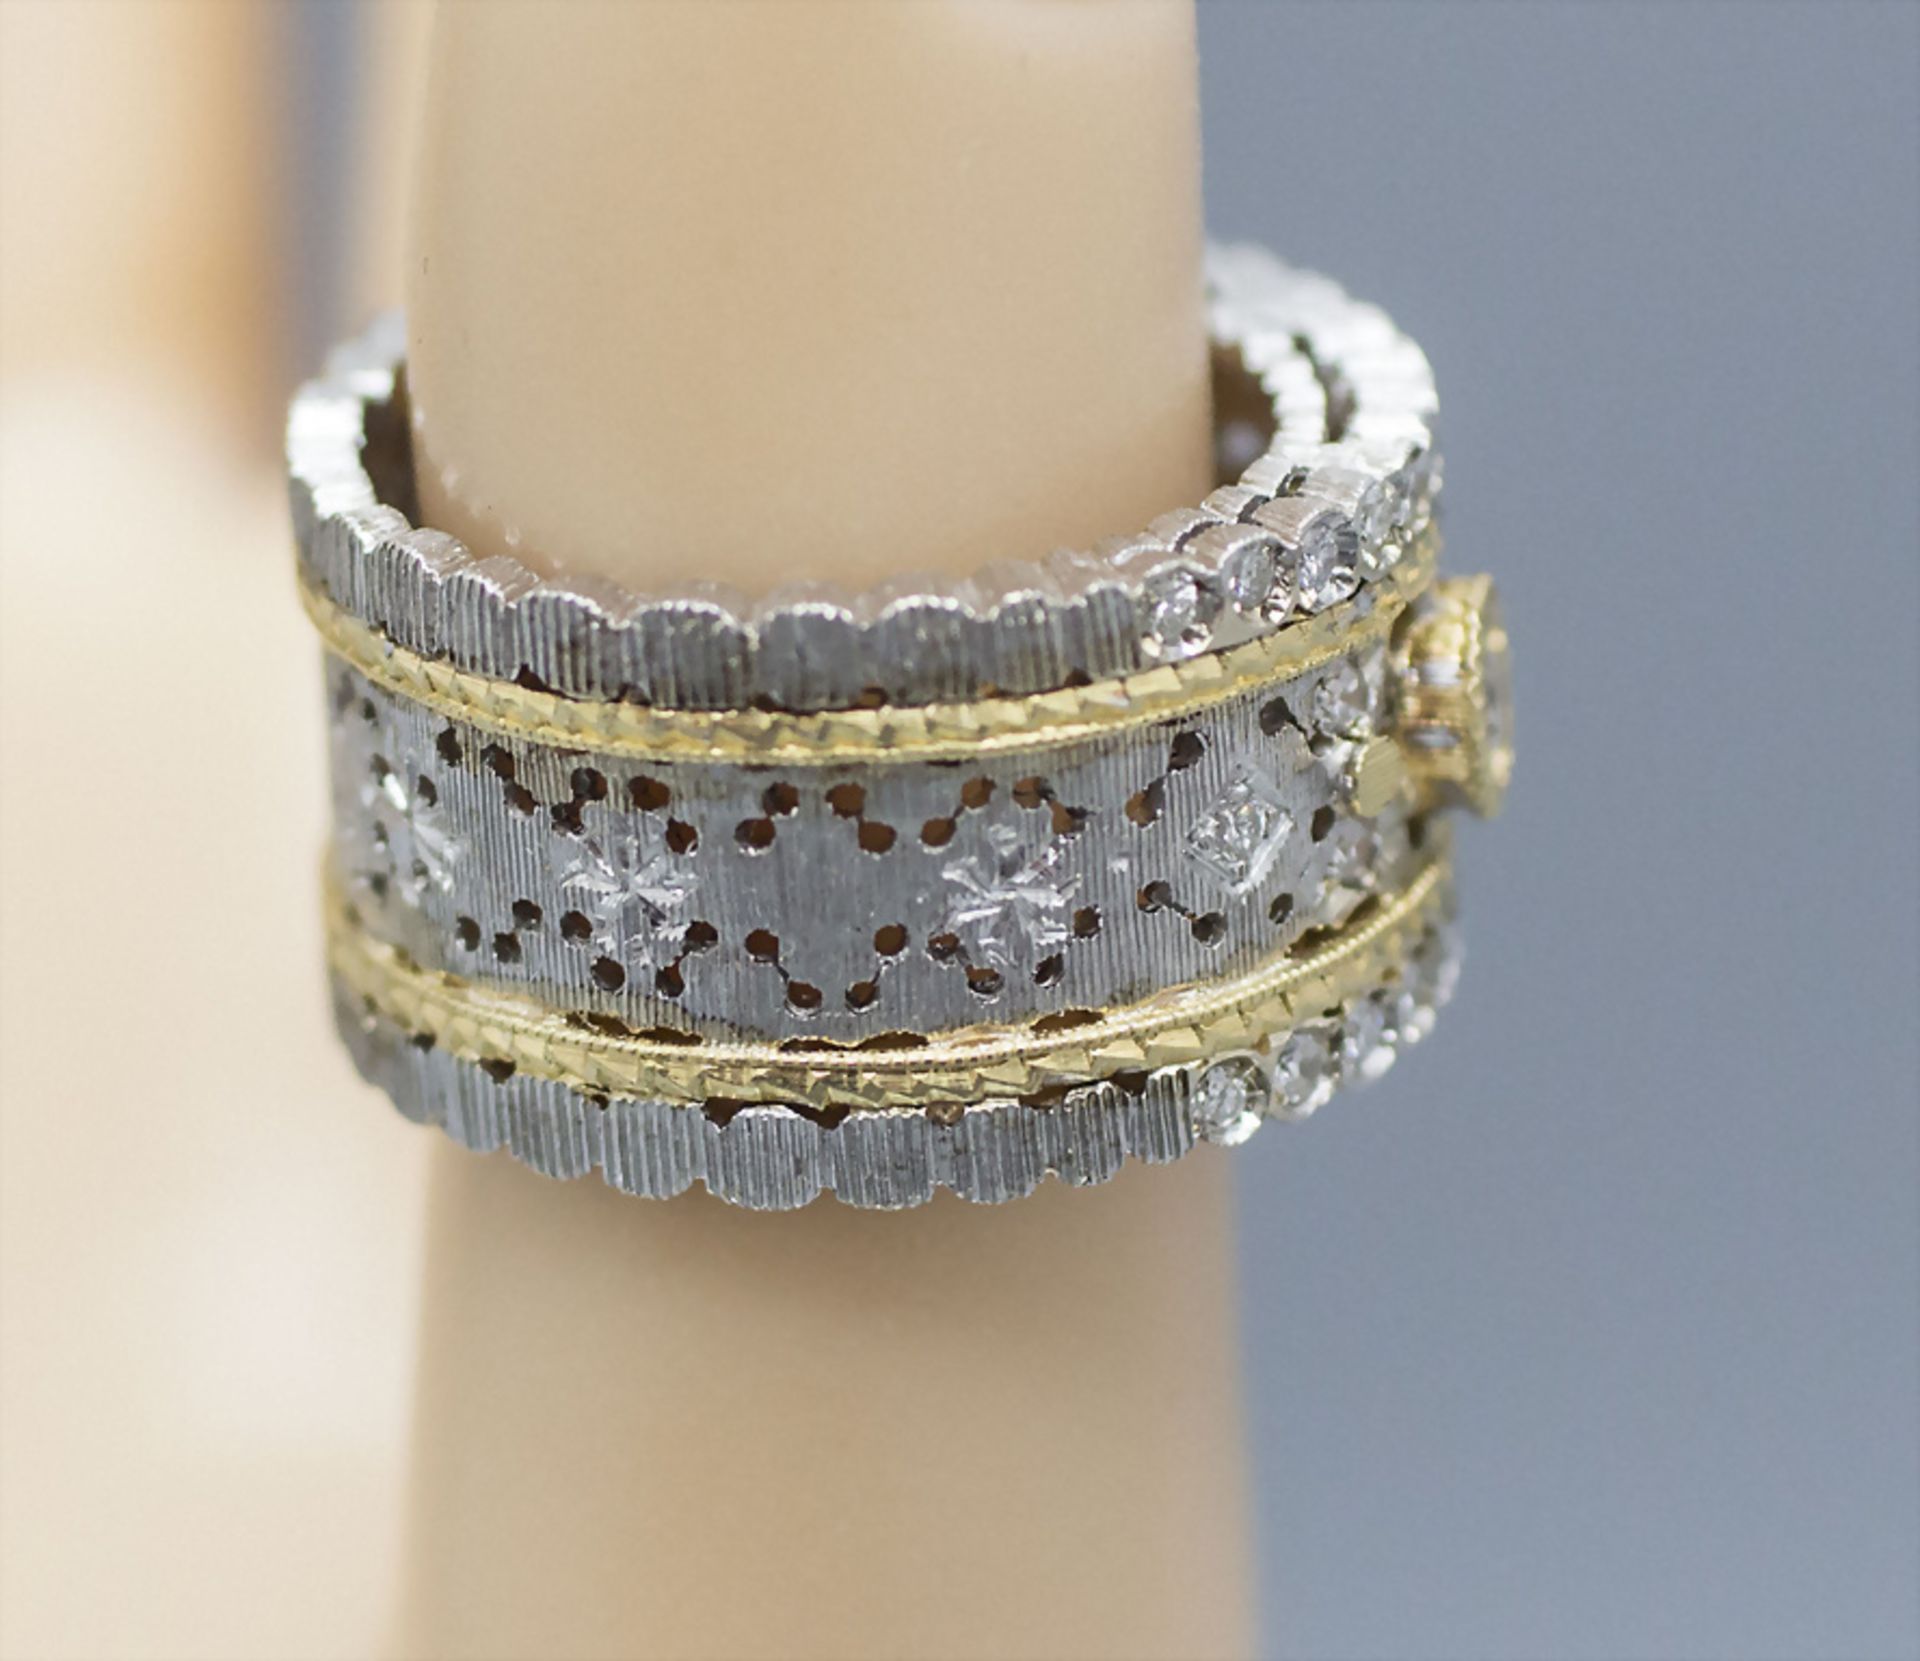 Damenring mit Brillanten / An 18 ct ladies gold ring with diamonds - Image 3 of 3